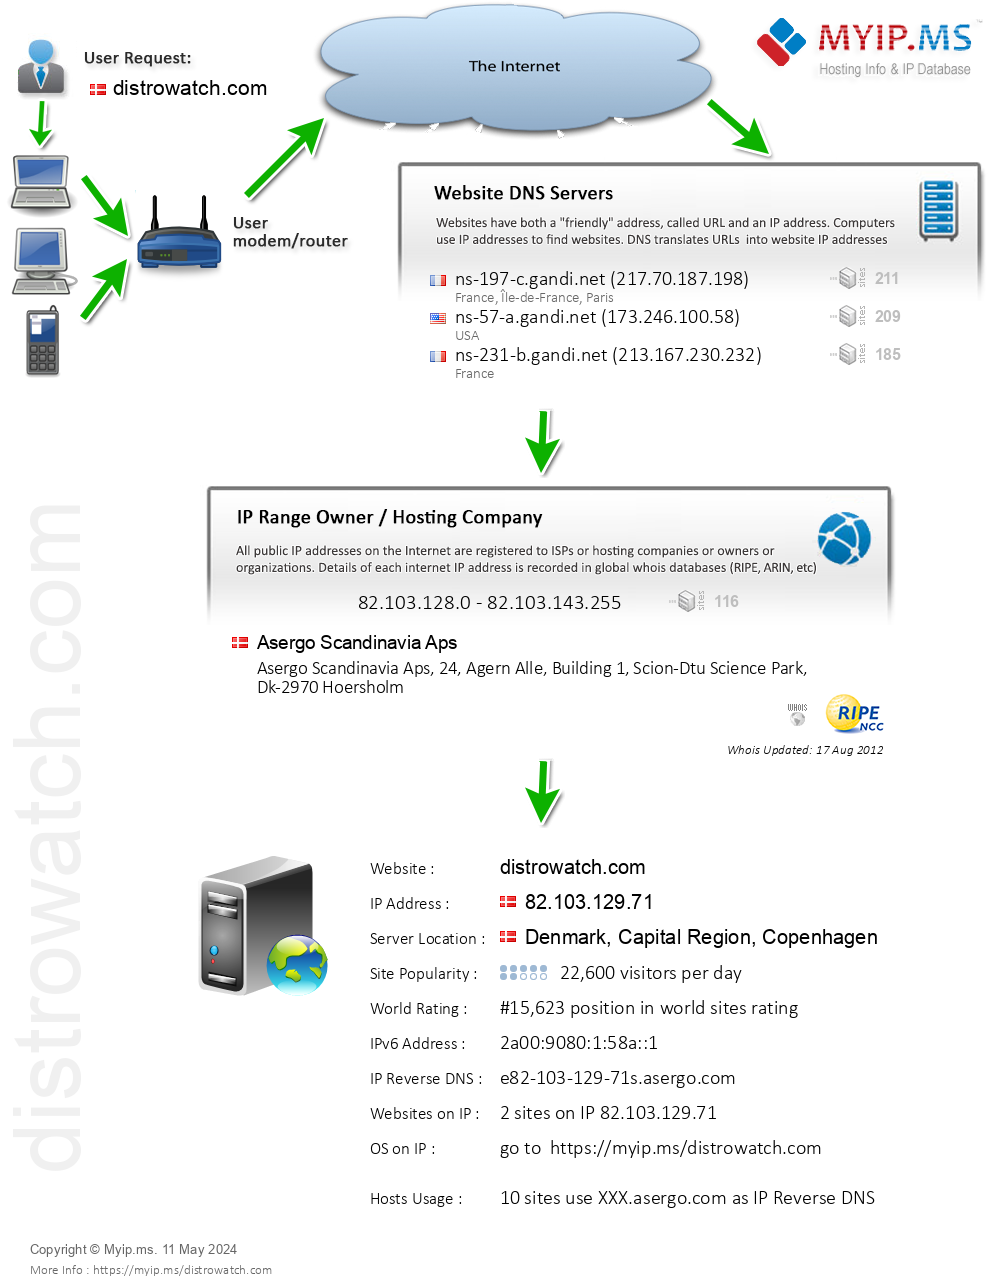 Distrowatch.com - Website Hosting Visual IP Diagram